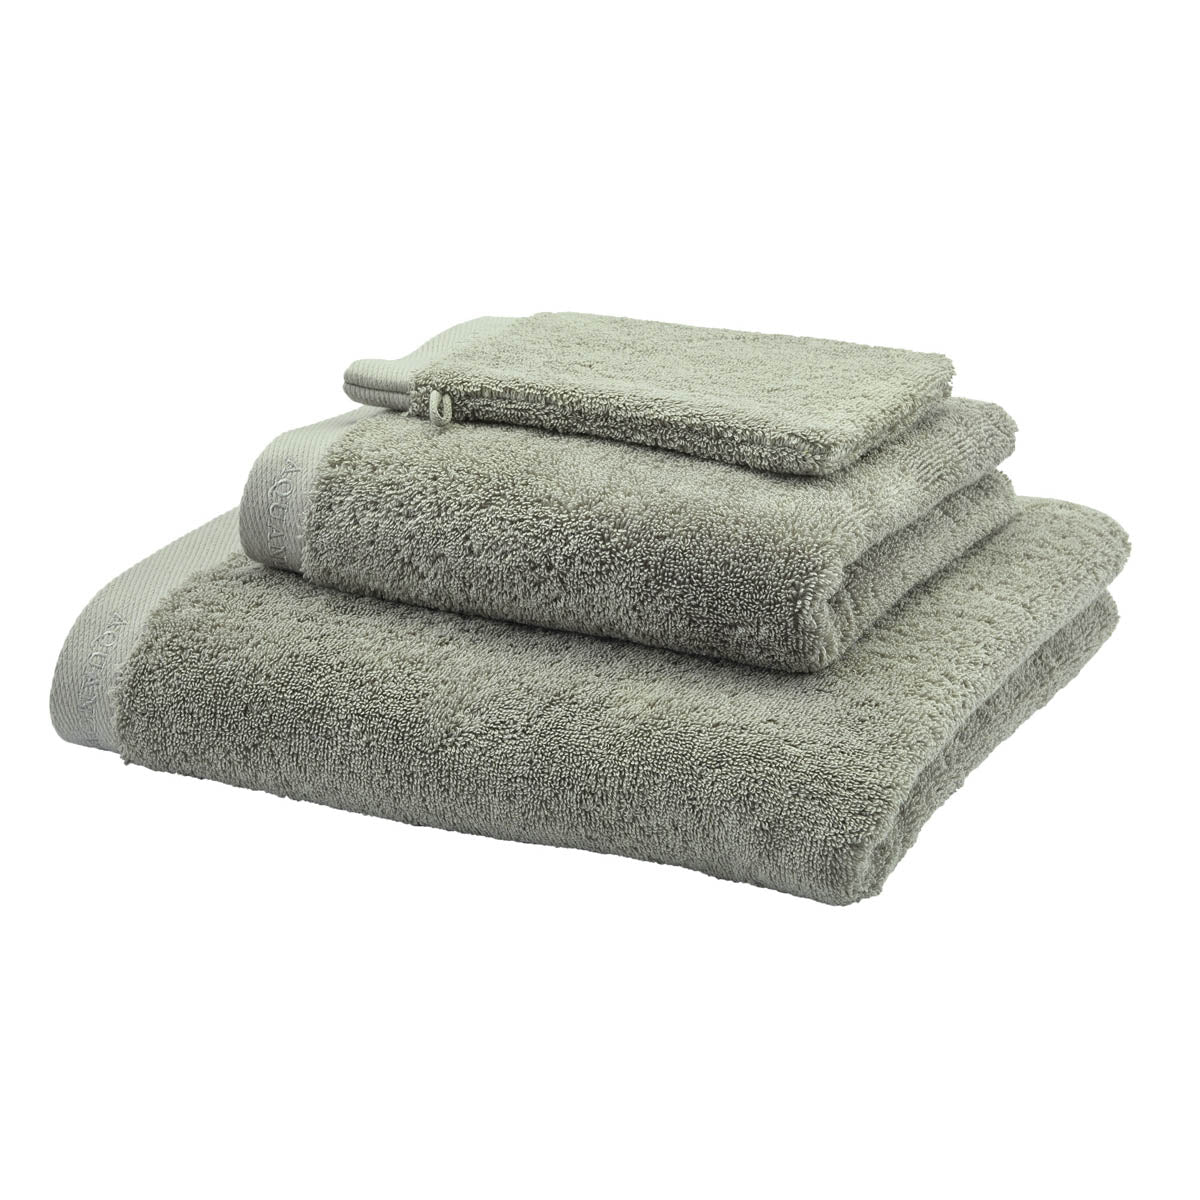 Sava - Towels